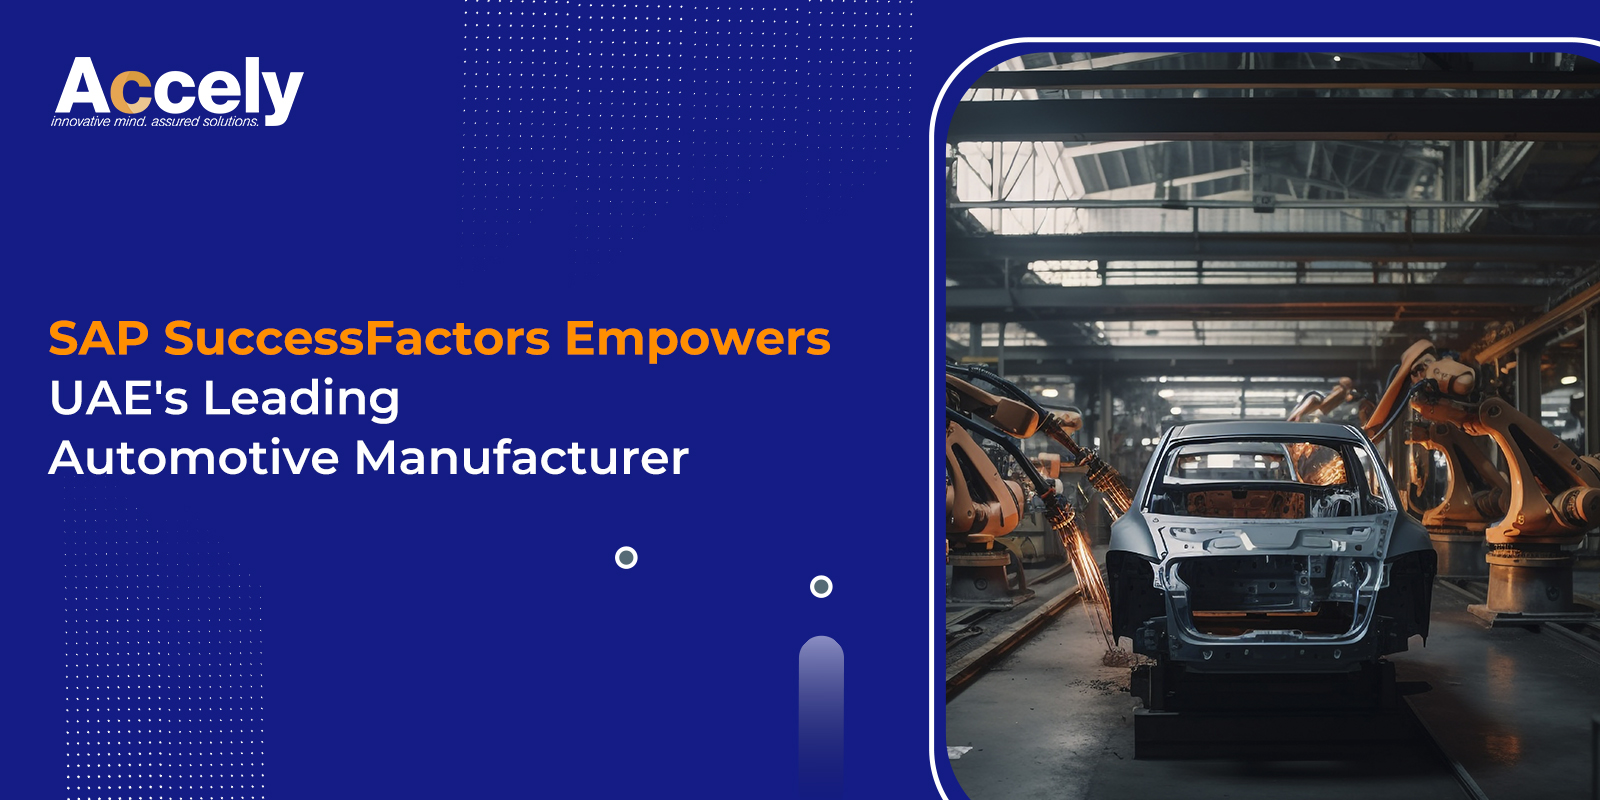 UAE's Leading Automotive Manufacturer Boosts HR Agility with SAP SuccessFactors